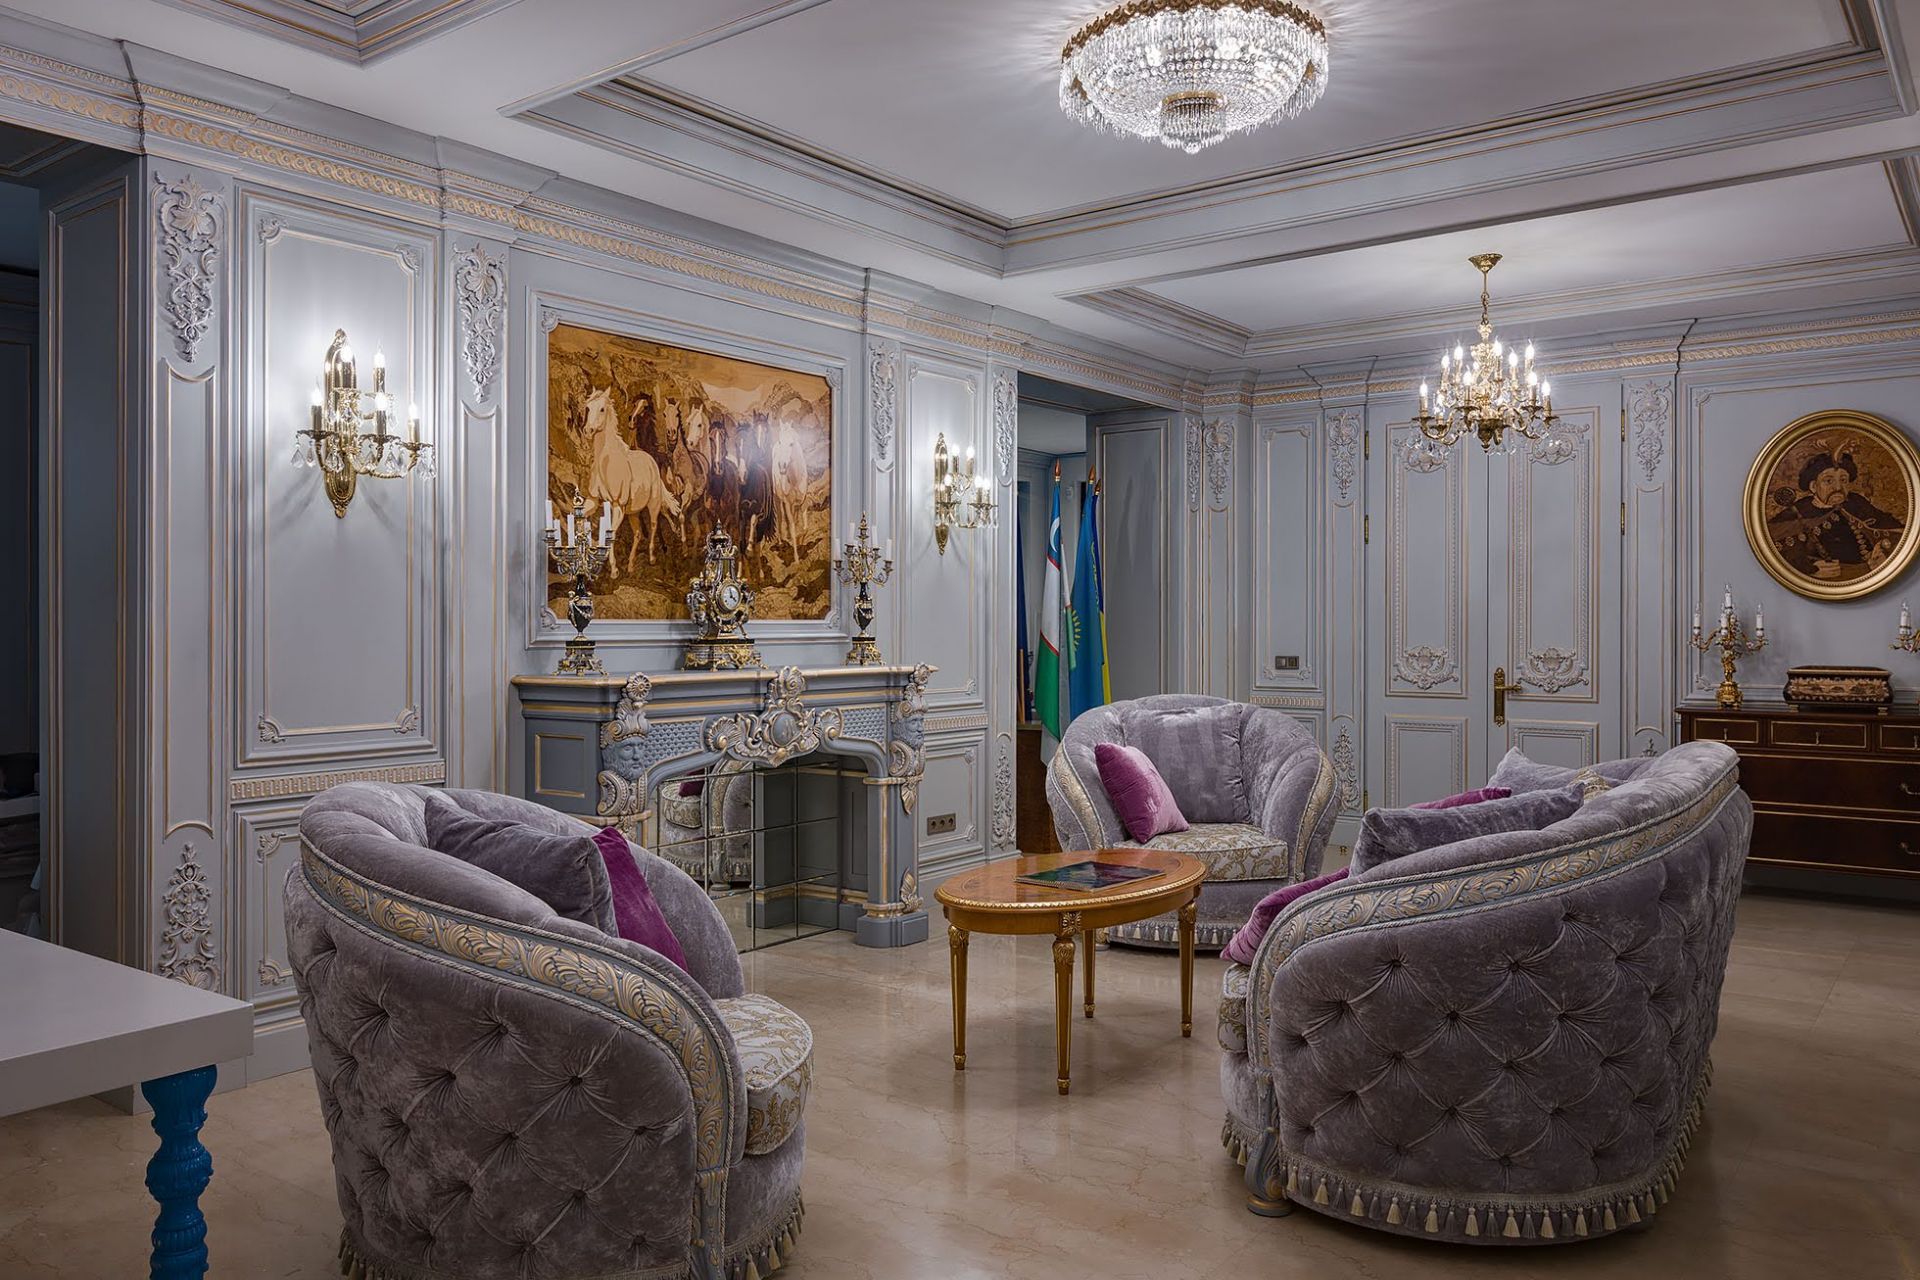 Lobby interior, MIRT office in Kiev